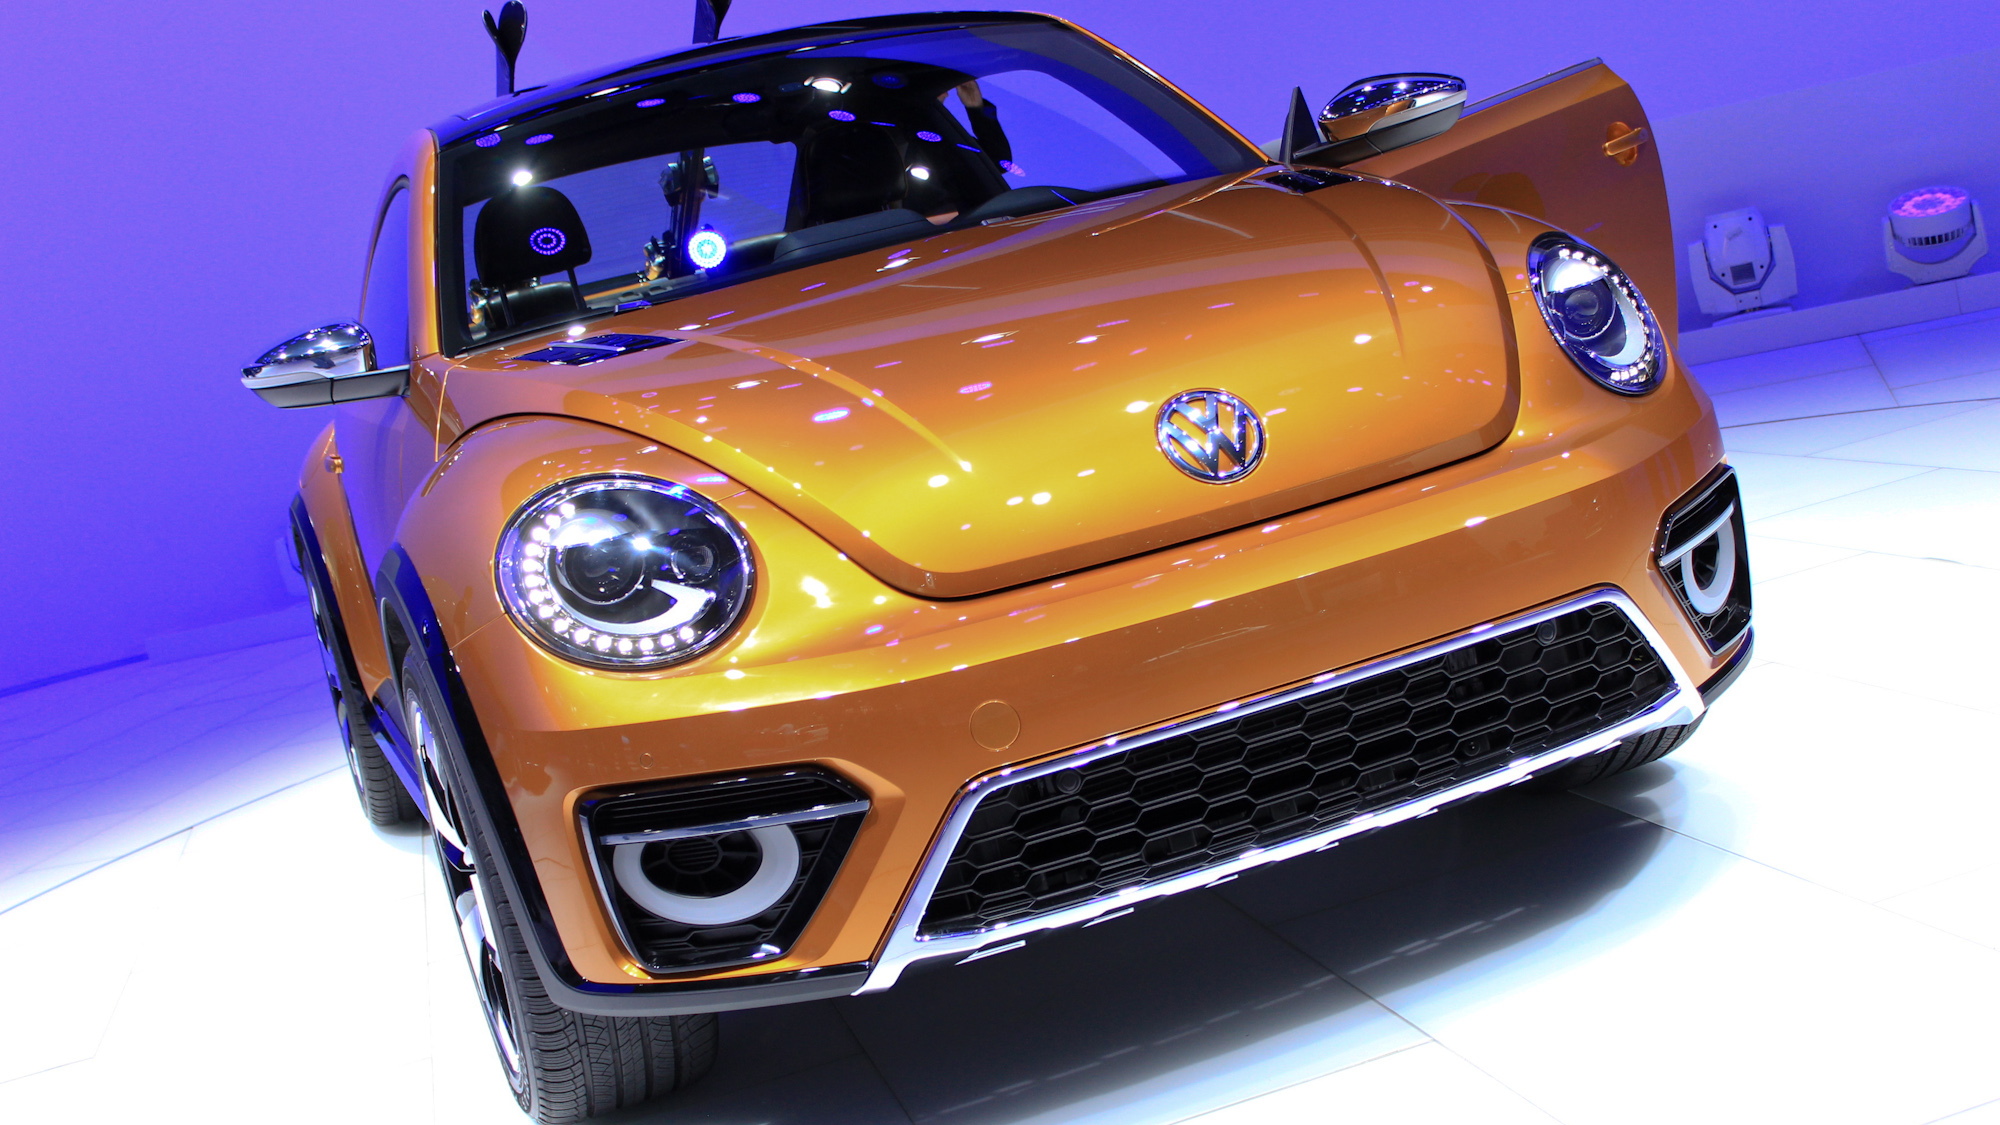 Volkswagen Beetle Dune Concept live photos, 2014 Detroit Auto Show